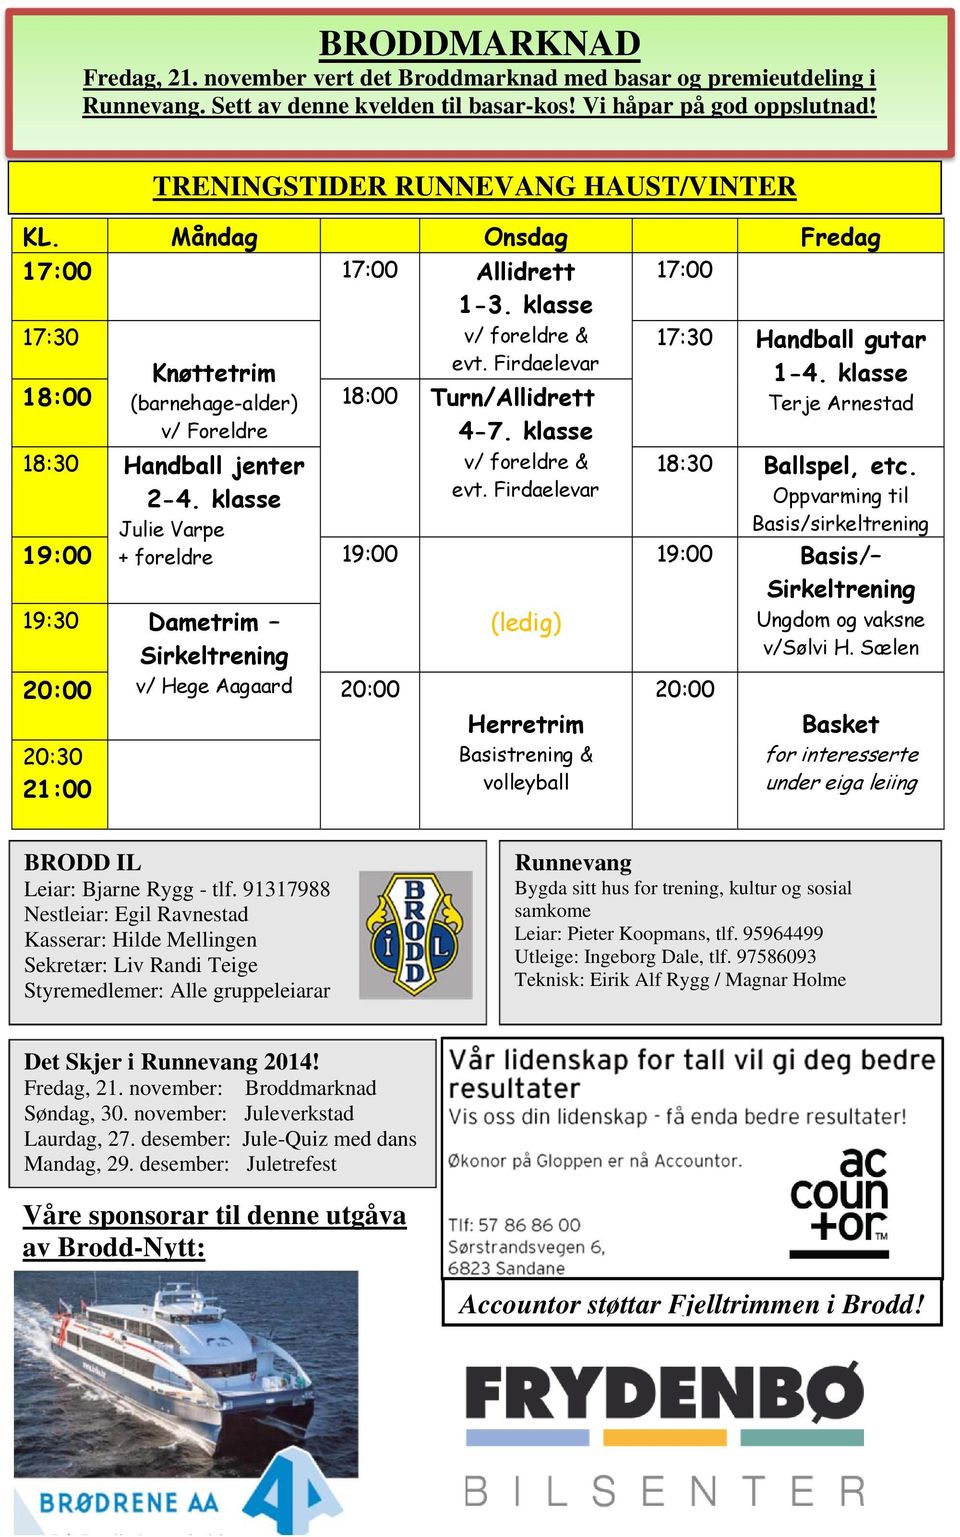 klasse 18:00 (barnehage-alder) 18:00 Turn/Allidrett Terje Arnestad v/ Foreldre 18:30 Handball jenter 19:00 2-4.